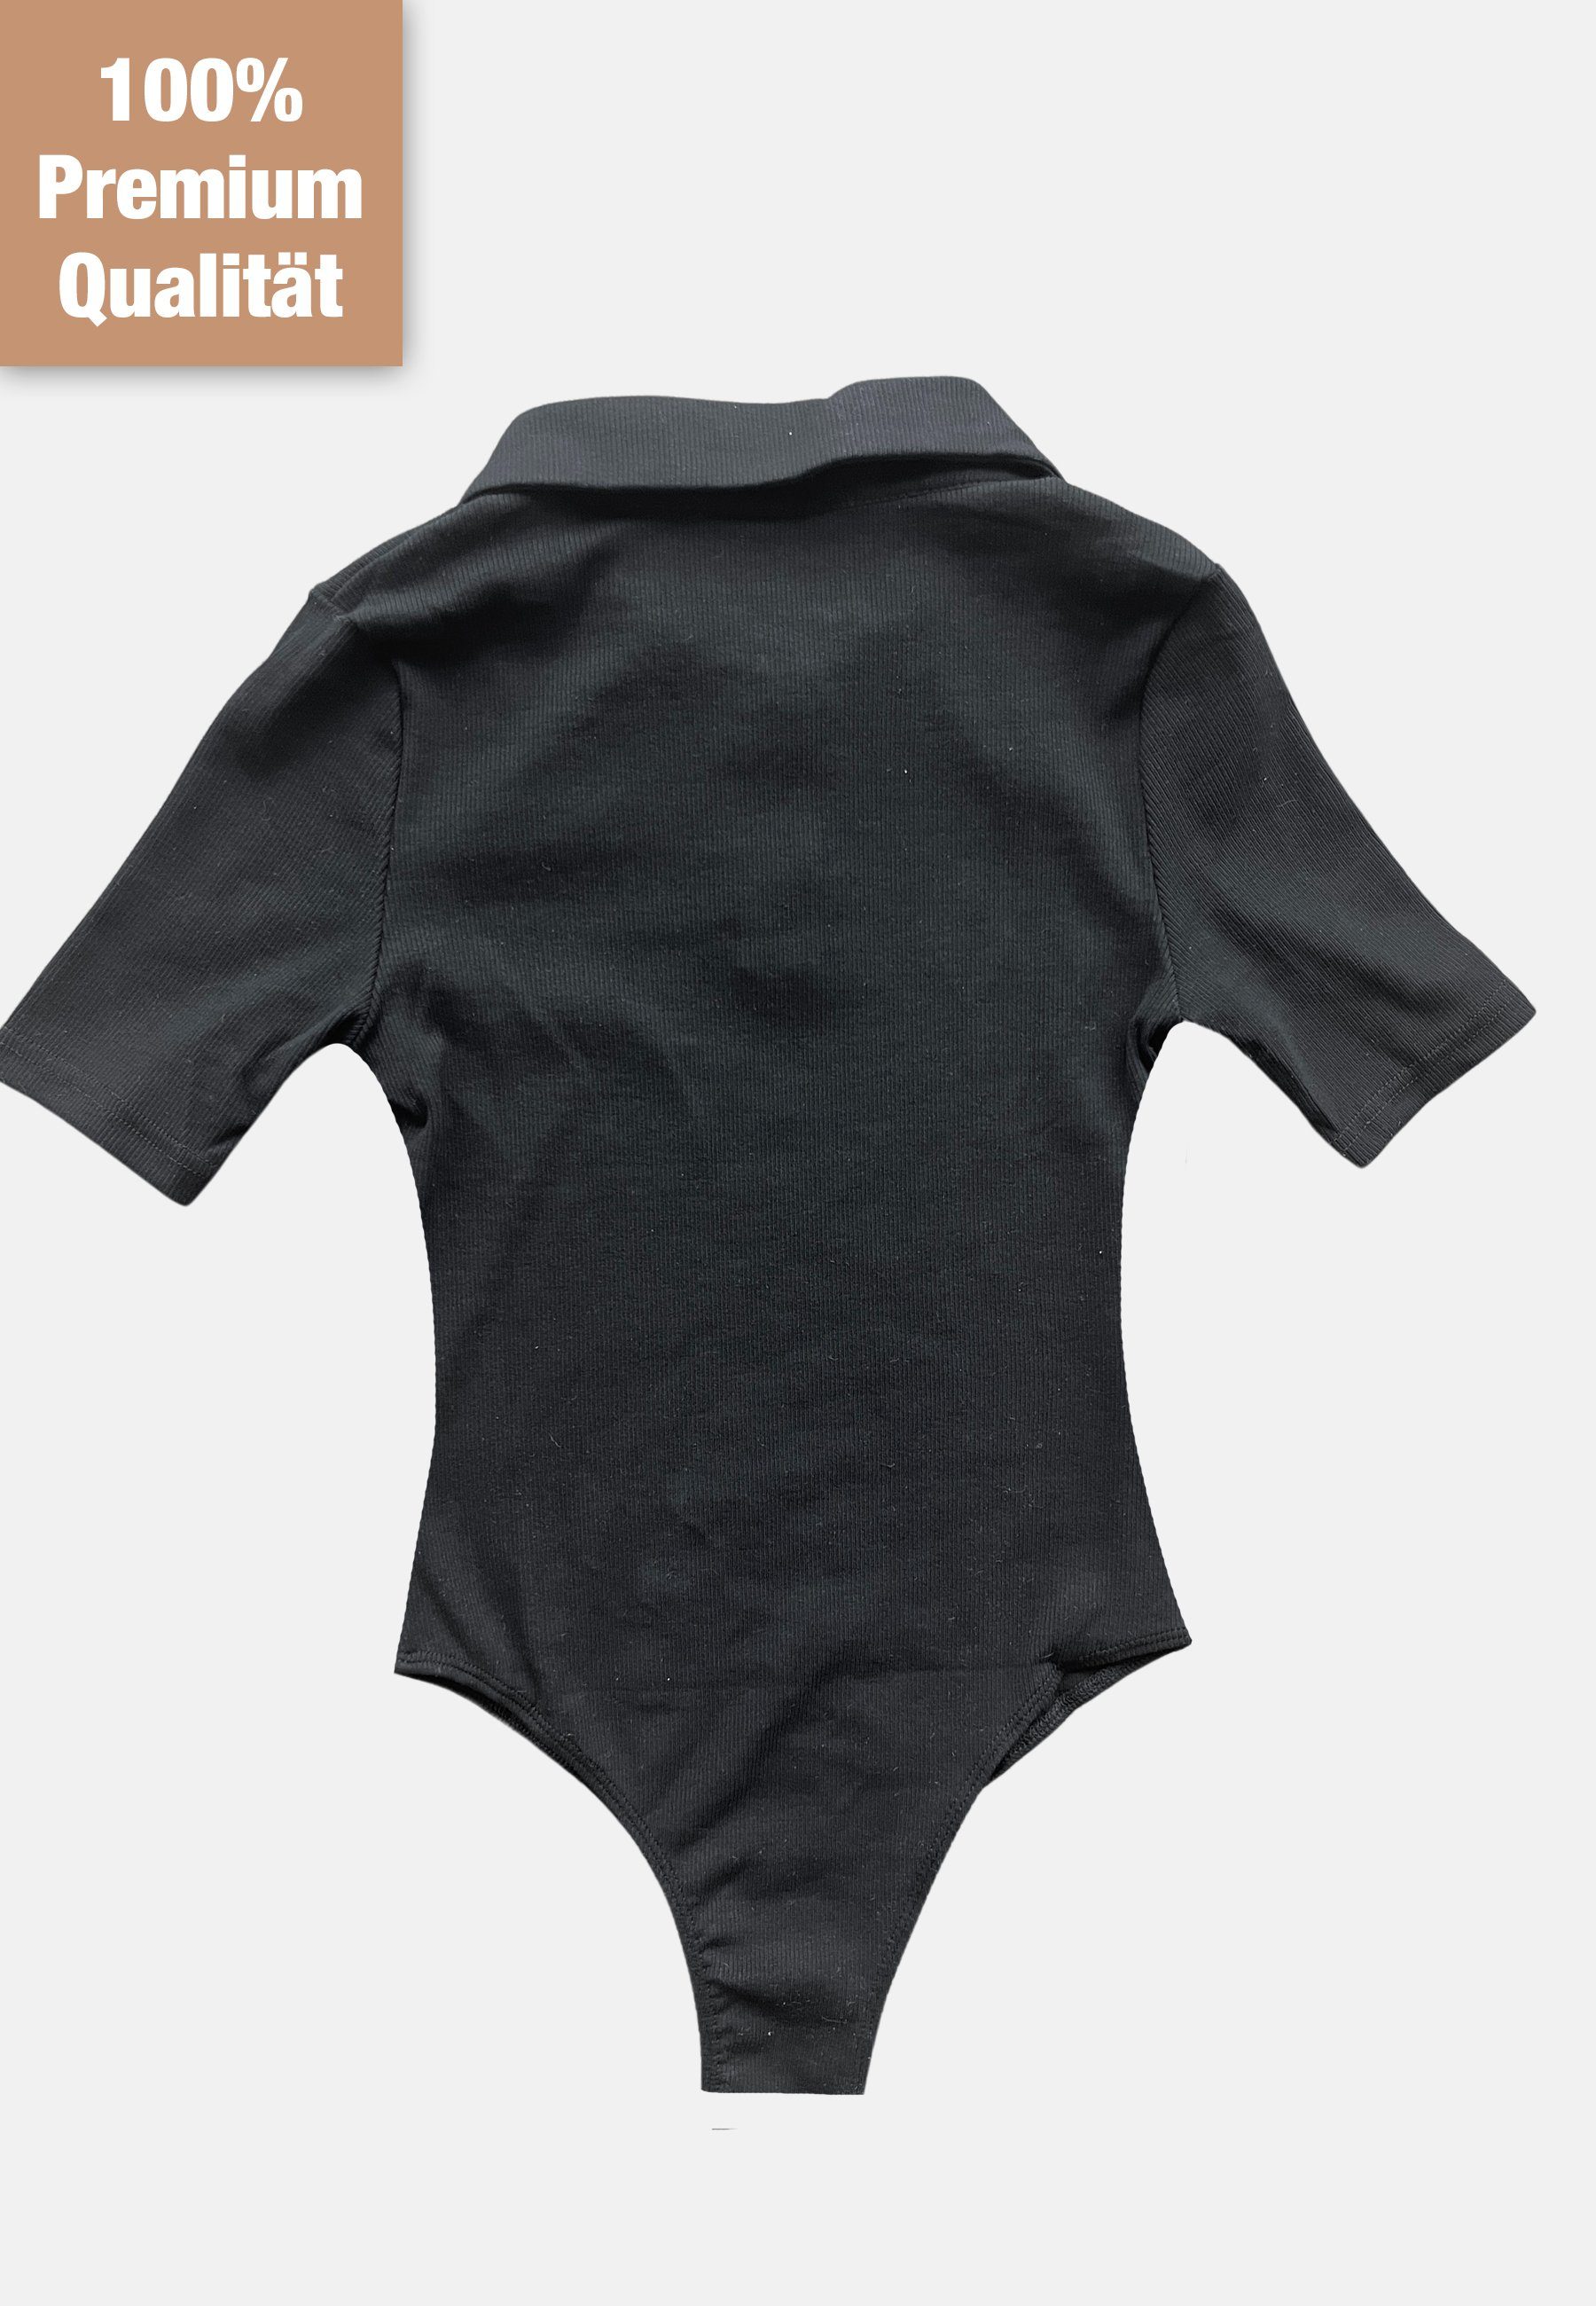 Schwarz #1 Kurzarm Shirt Druckknöpfen mit Premium Body Kurzarmbody Topseller